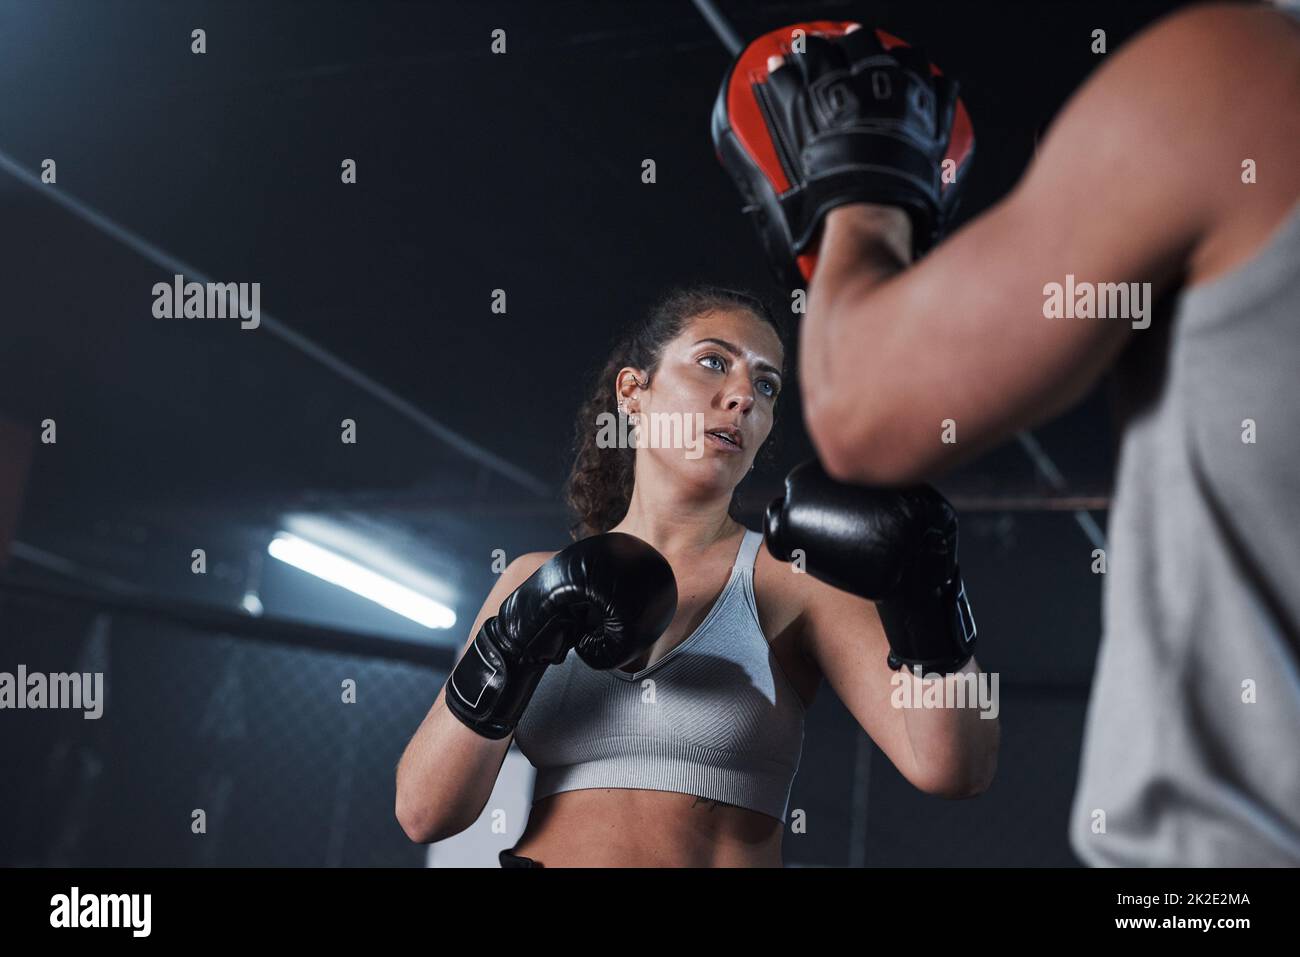 Libérez votre bête intérieure. Photo d'une jeune femme pratiquant avec son entraîneur dans un gymnase de boxe. Banque D'Images